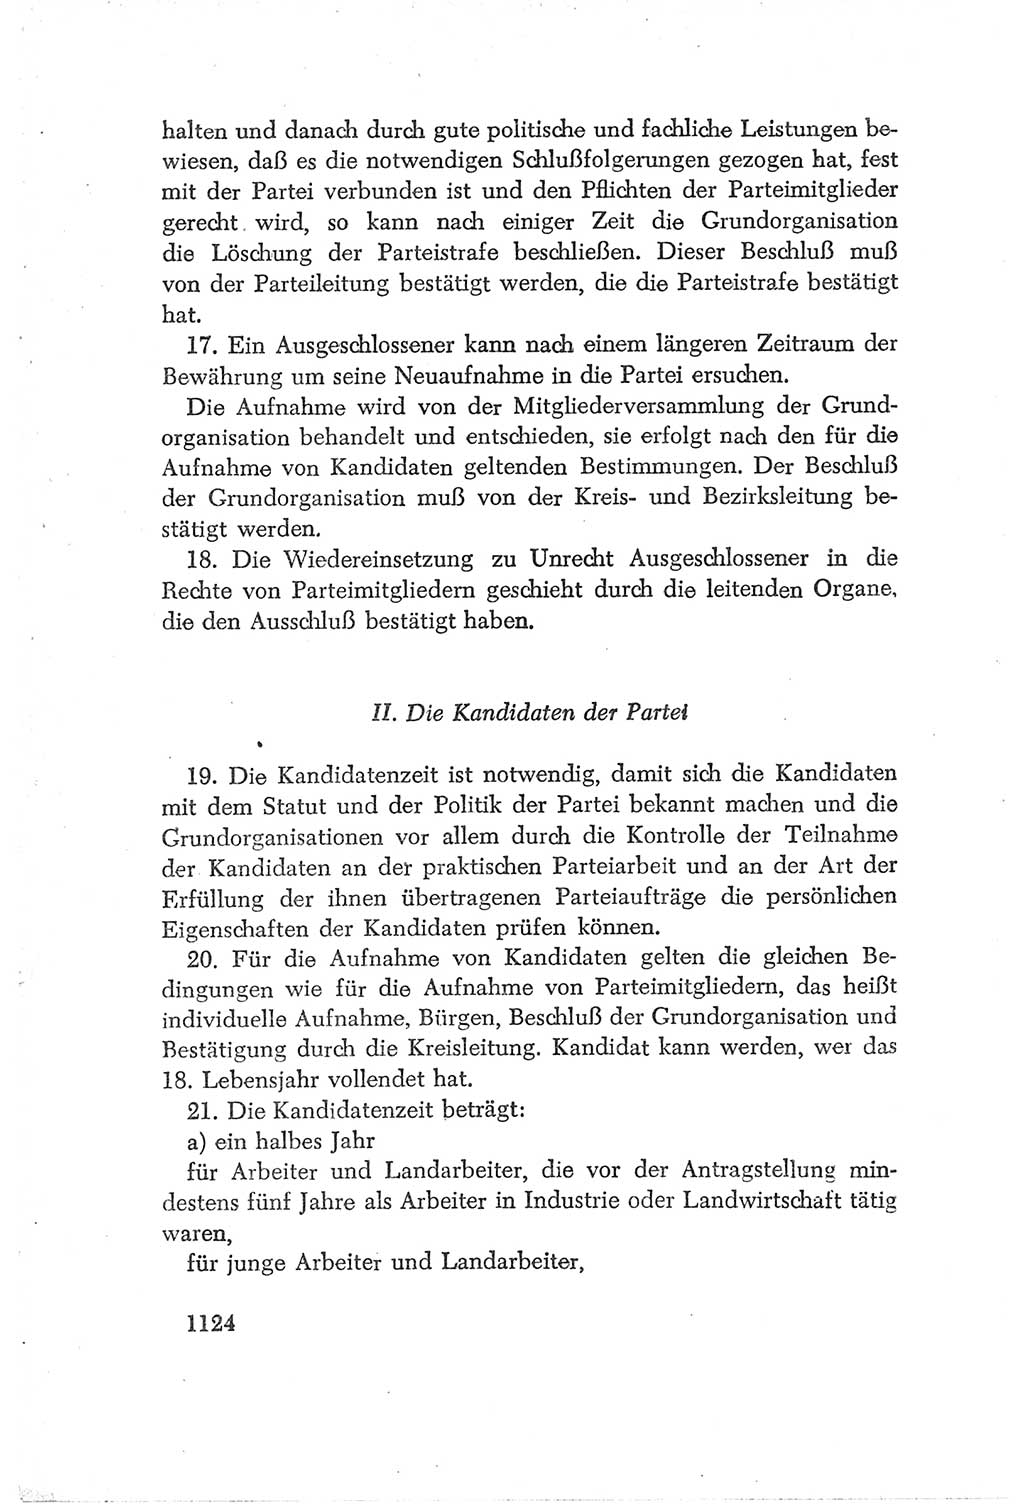 Protokoll der Verhandlungen des Ⅳ. Parteitages der Sozialistischen Einheitspartei Deutschlands (SED) [Deutsche Demokratische Republik (DDR)] 1954, Seite 1124